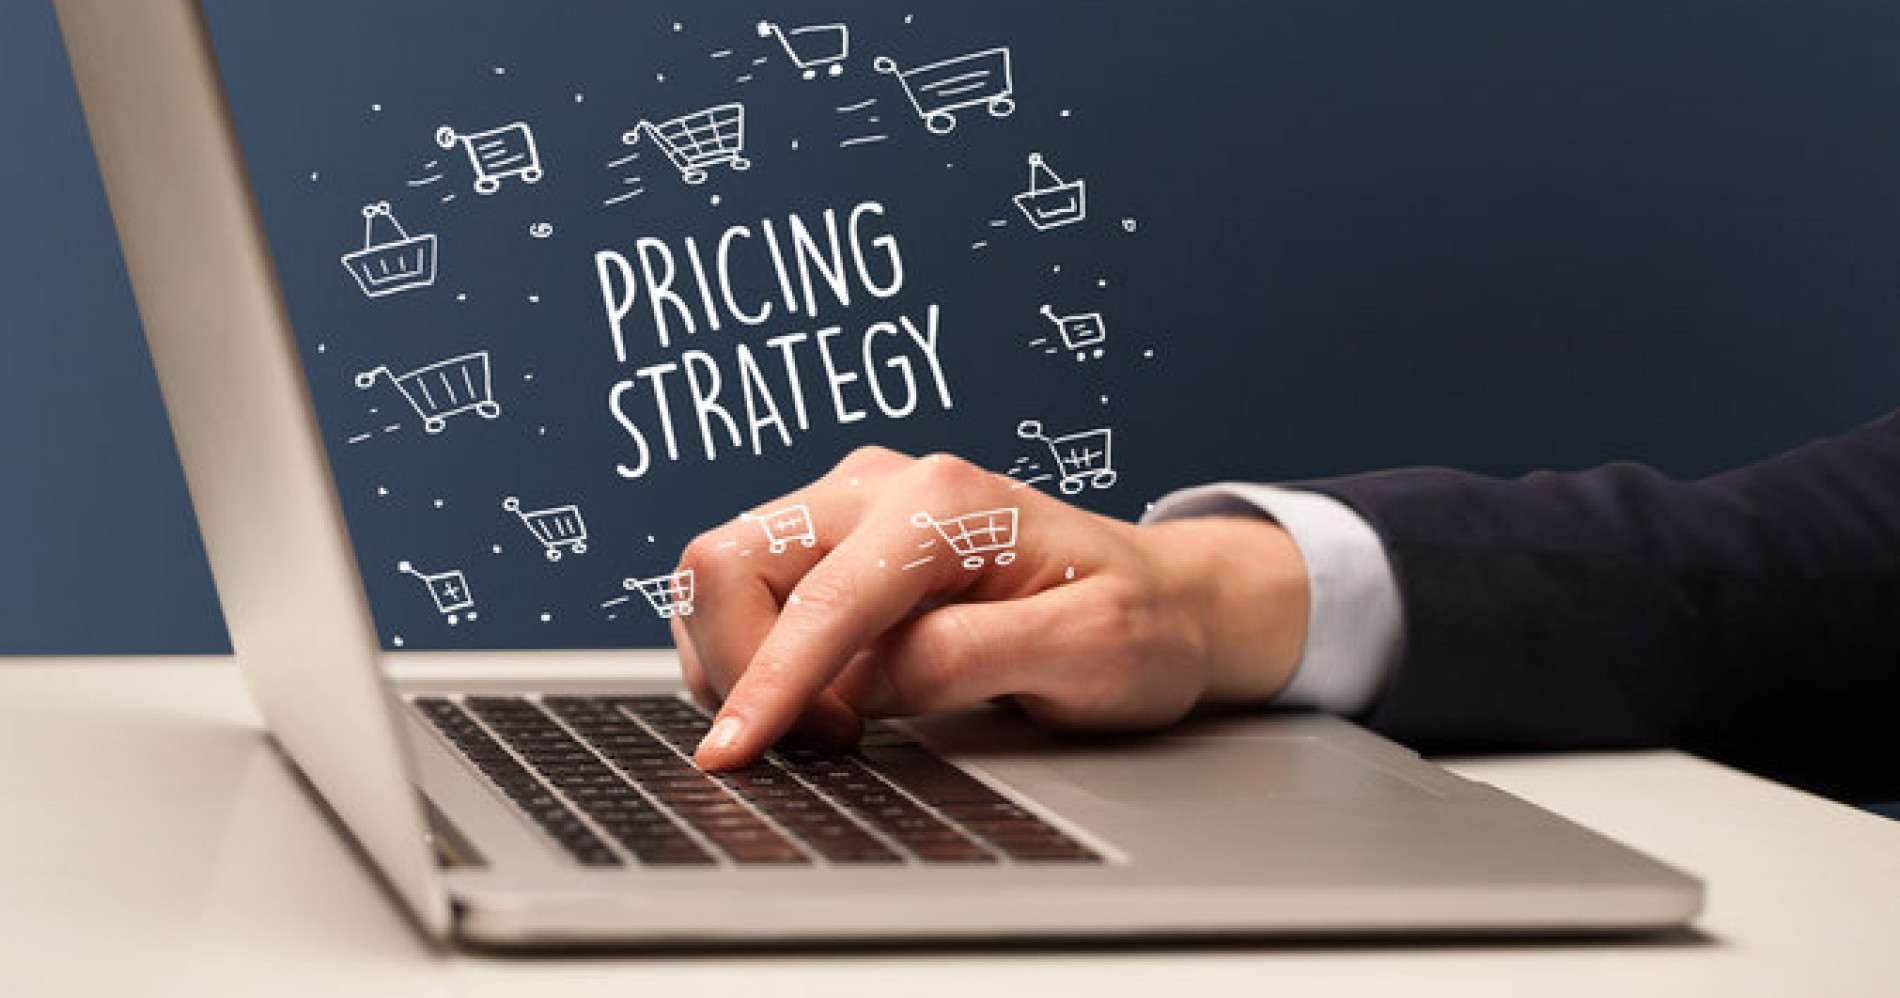 Pricing Strategy, menentukan harga jual sesuai dengan target pasar dan karakteristik (Sumber Gambar: Adobe Stock)